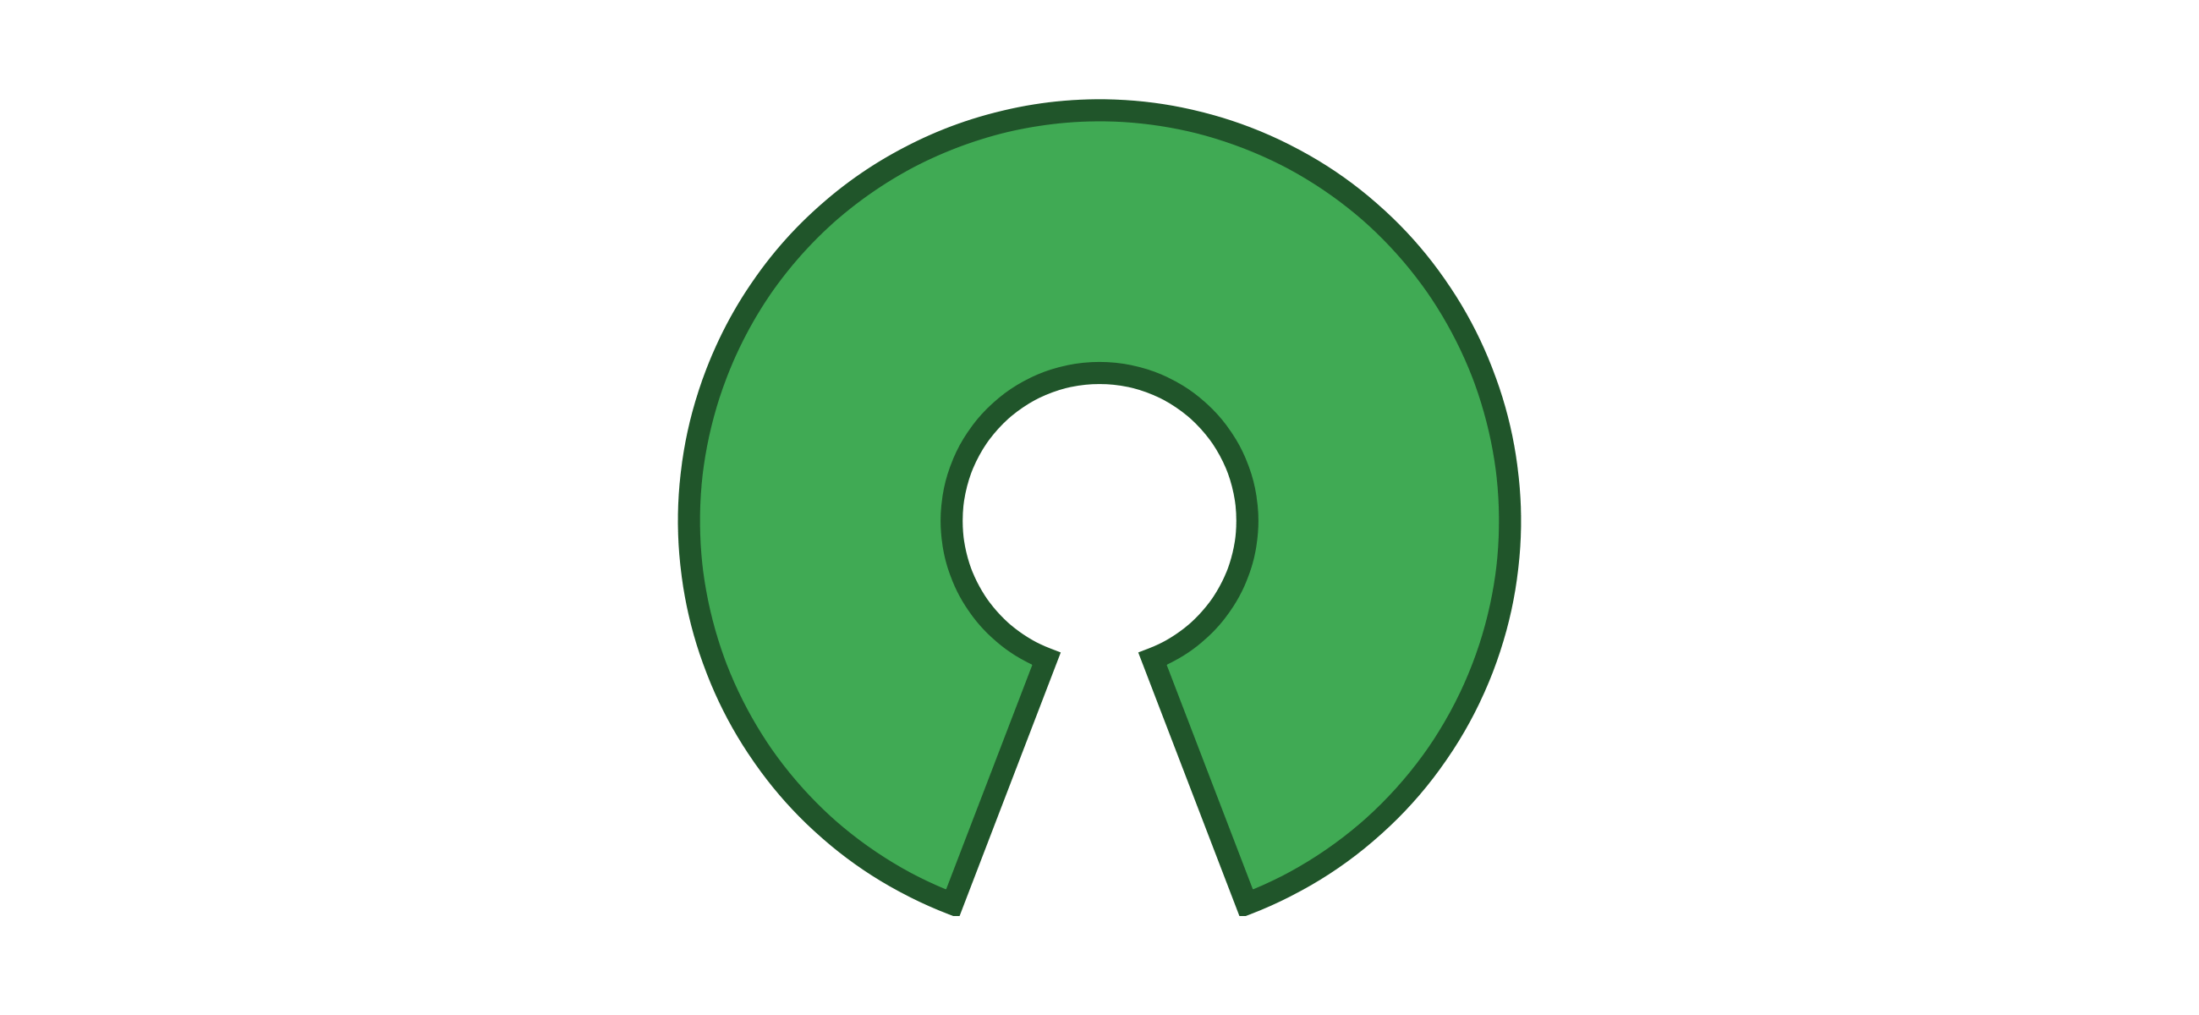 С открытым исходным кодом. Open source. Open source лого. Open source иконка. Open source initiative.